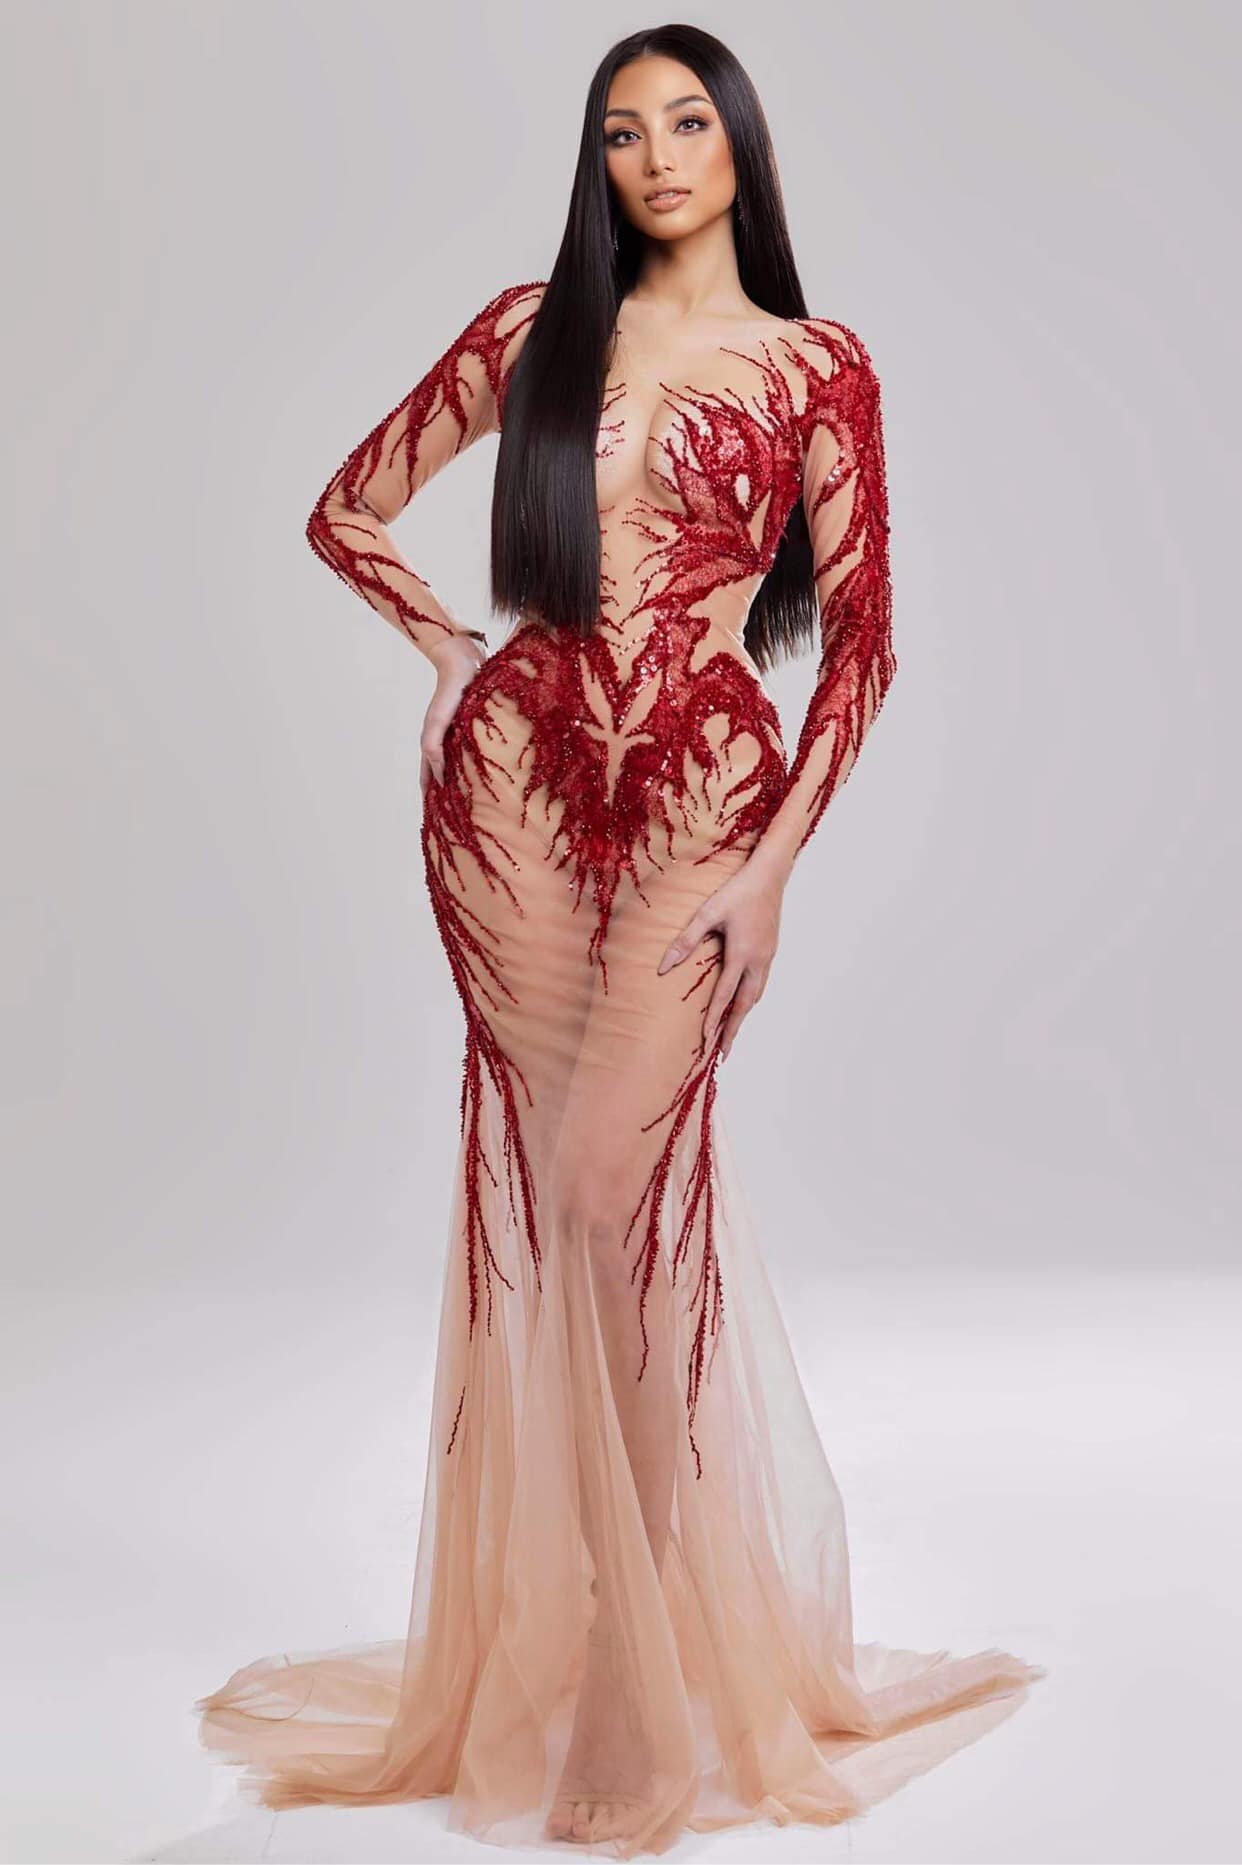 Bản sao của Kim Kardashian tại Hoa hậu Hoàn vũ Việt Nam, thân hình làn da 'nóng' hơn cả H'Hen Niê - Ảnh 2